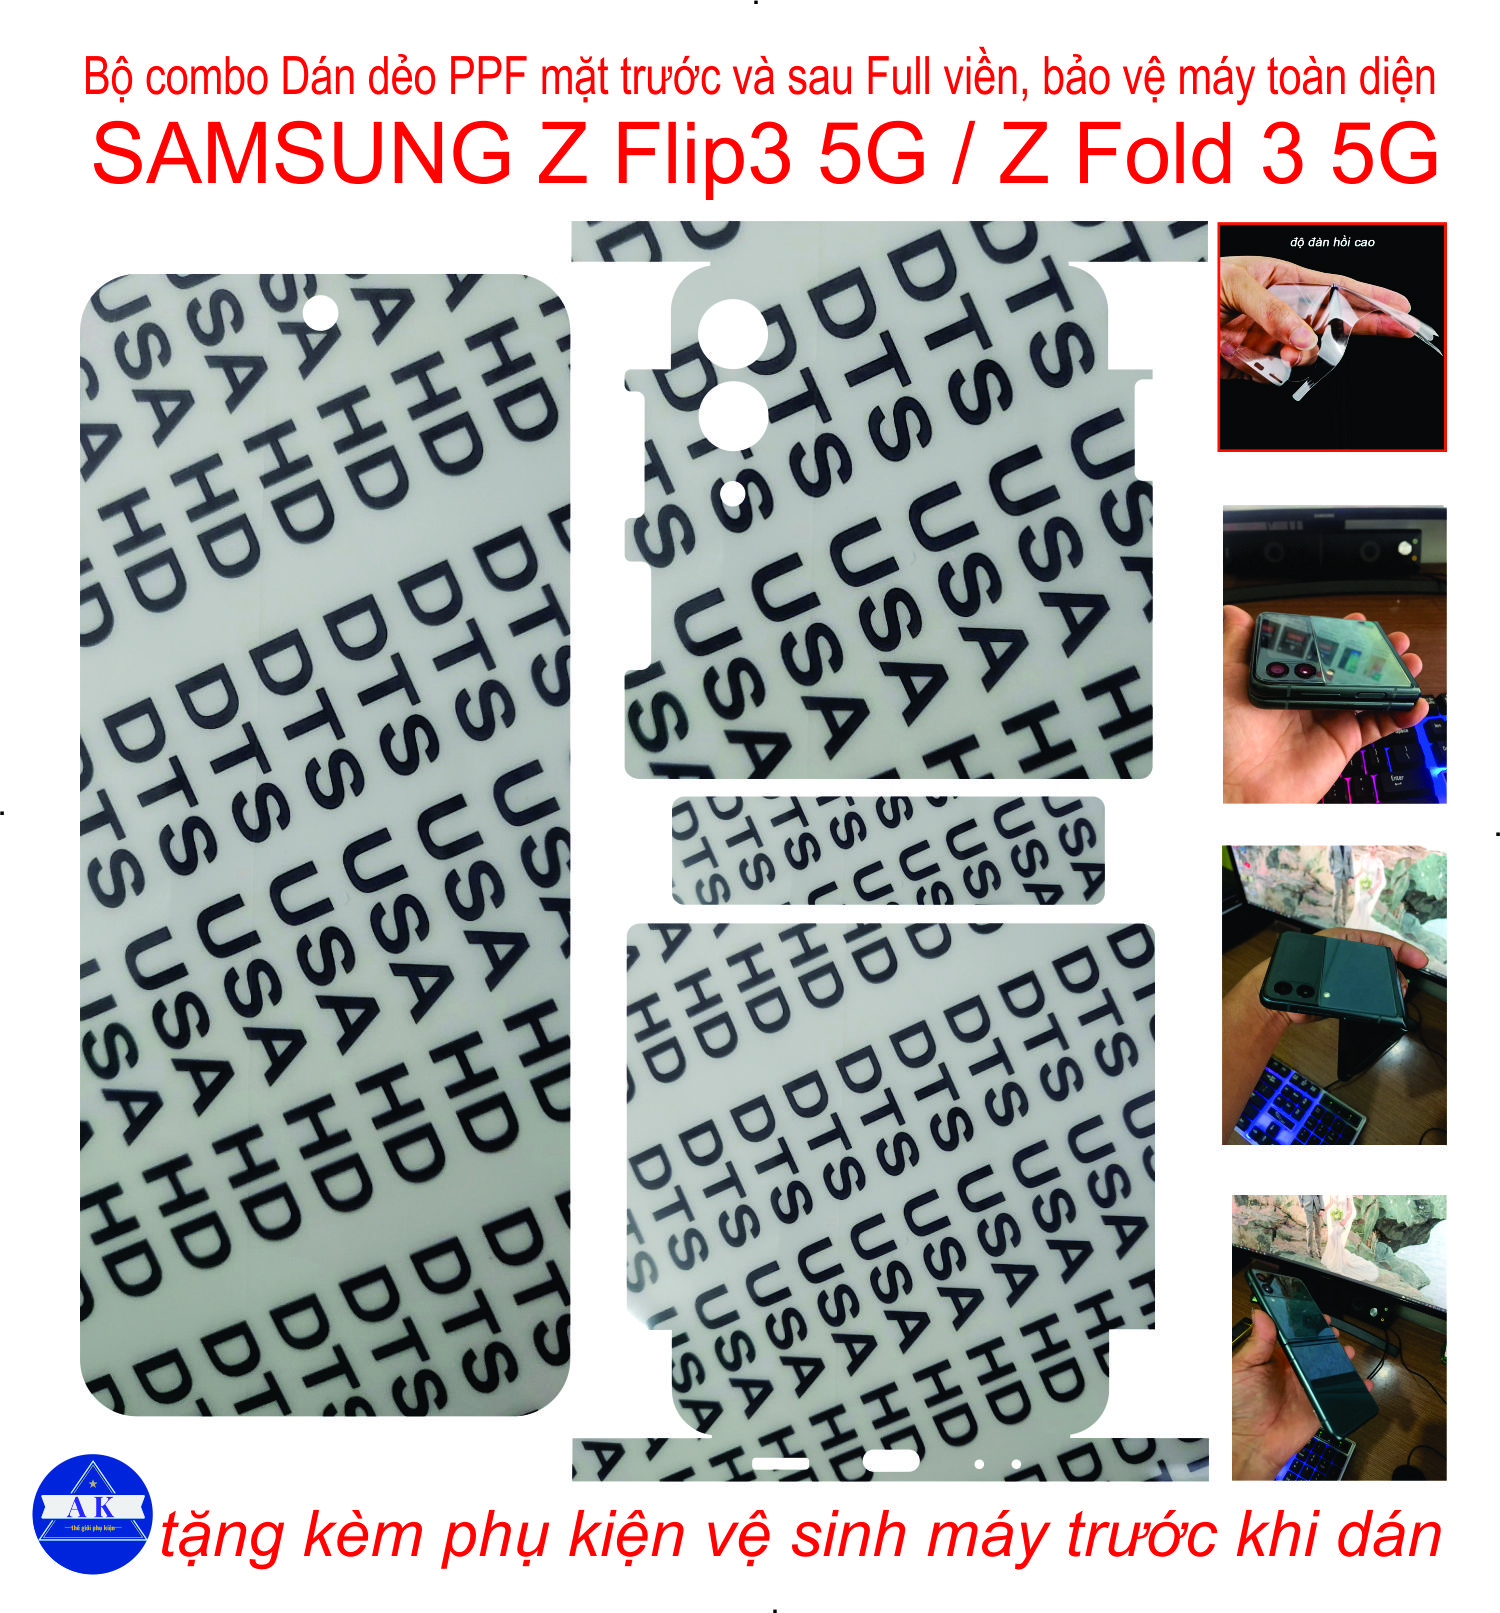 Bộ combo dán dẻo PPF trước và sau dành cho Samsung Z Flip 3 5G /Z Fold 3 5G Bảo vệ máy toàn diện